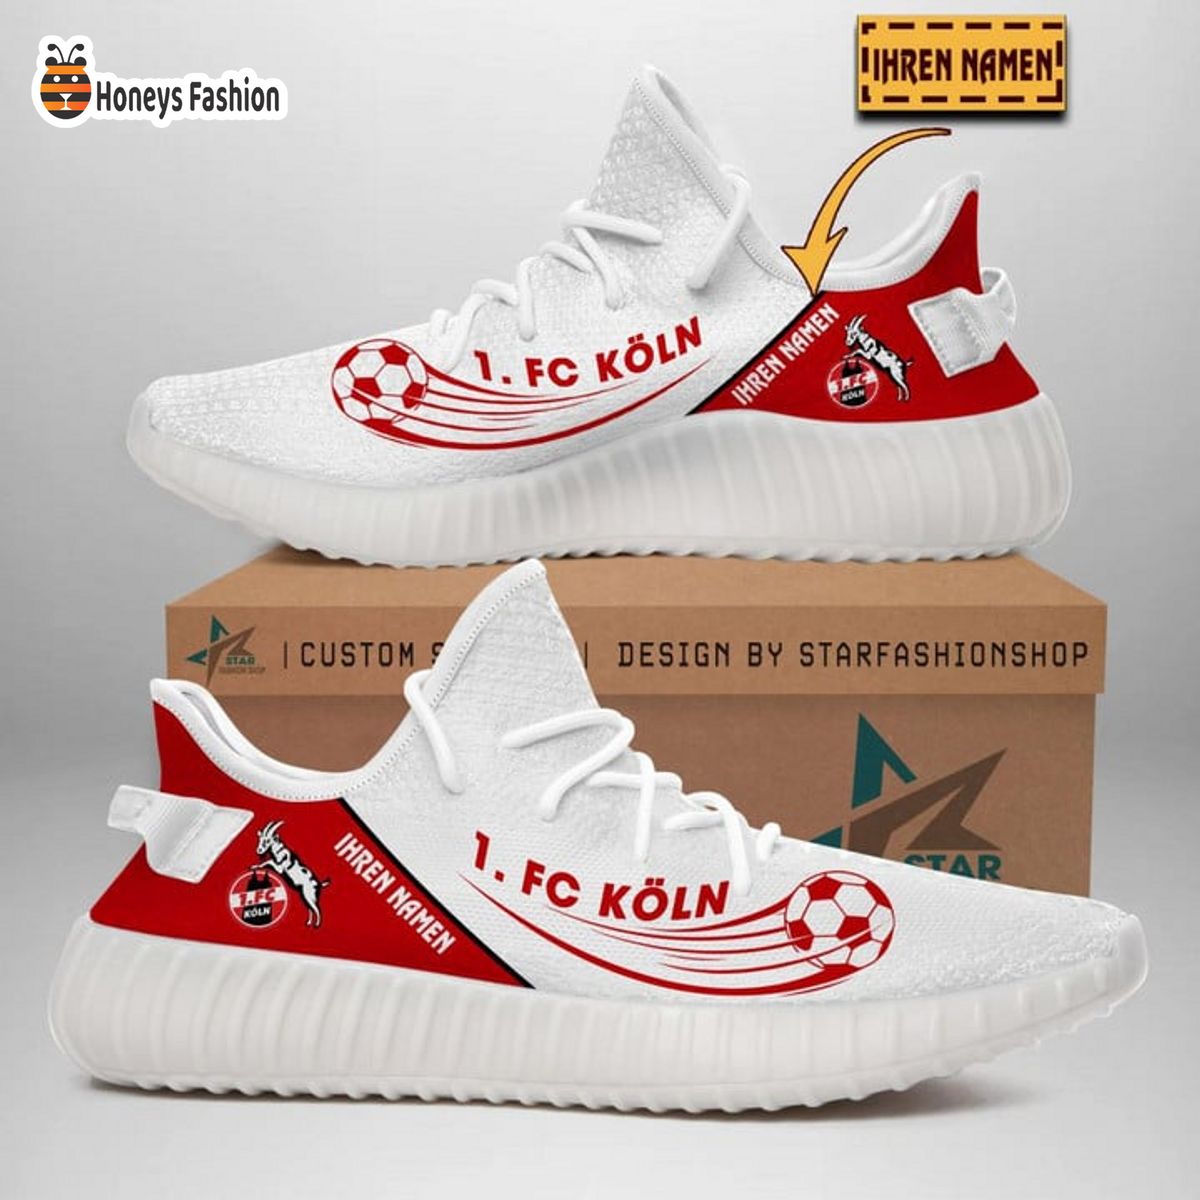 1. FC Koln personalisiert yeezy sneaker